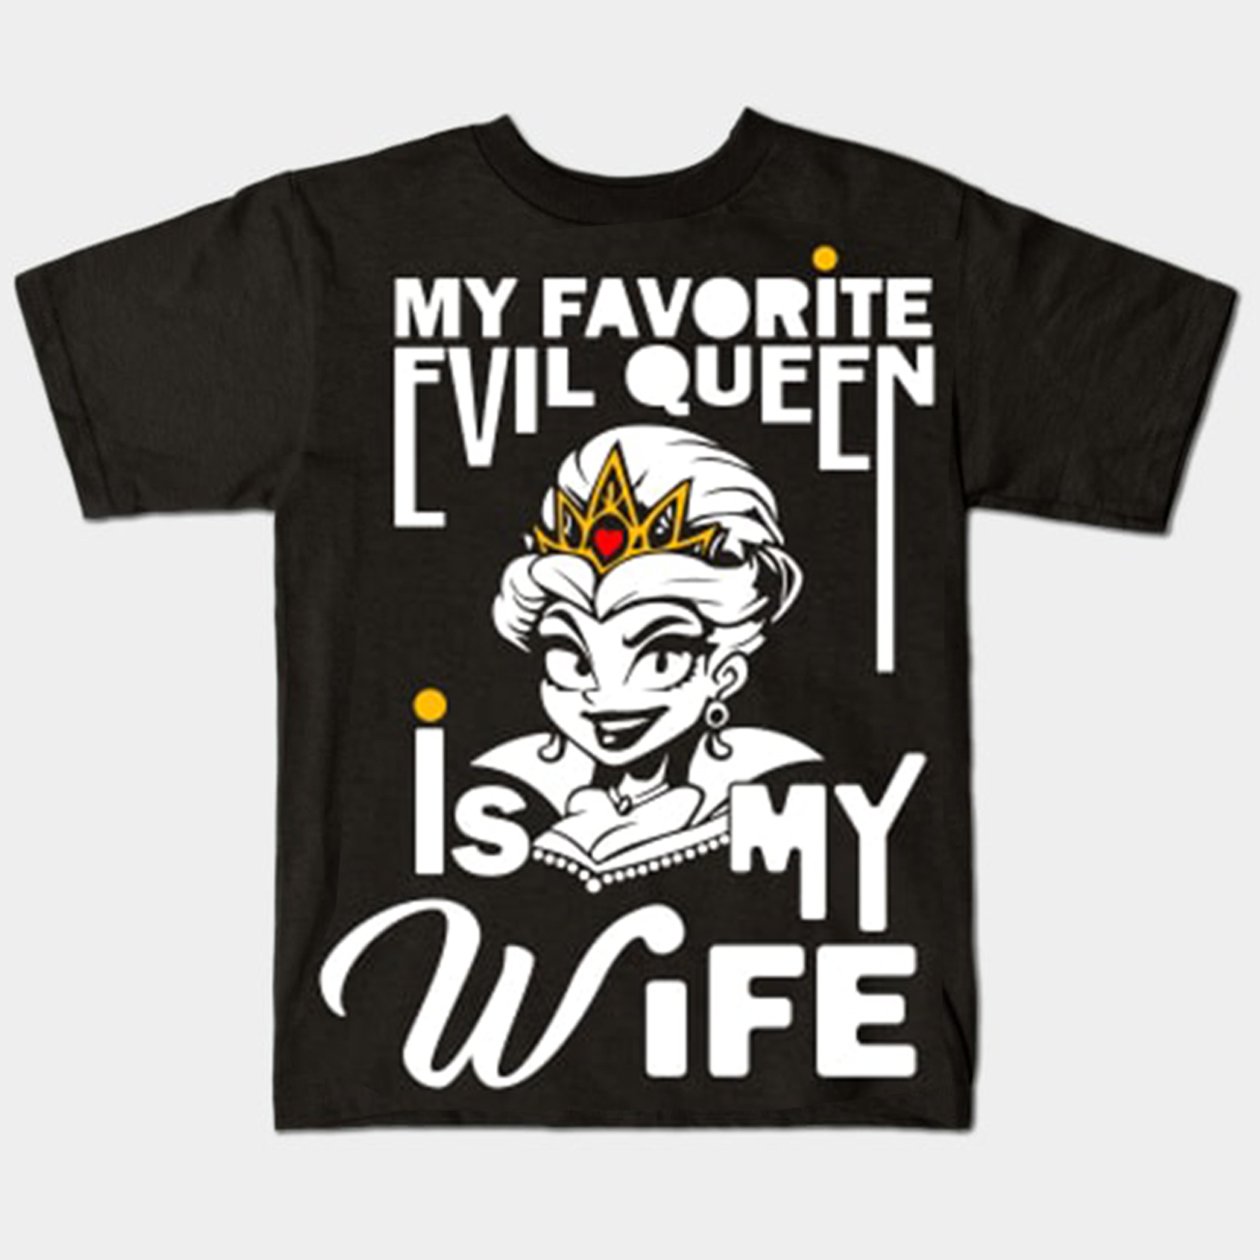 evil queen is my wife shirt